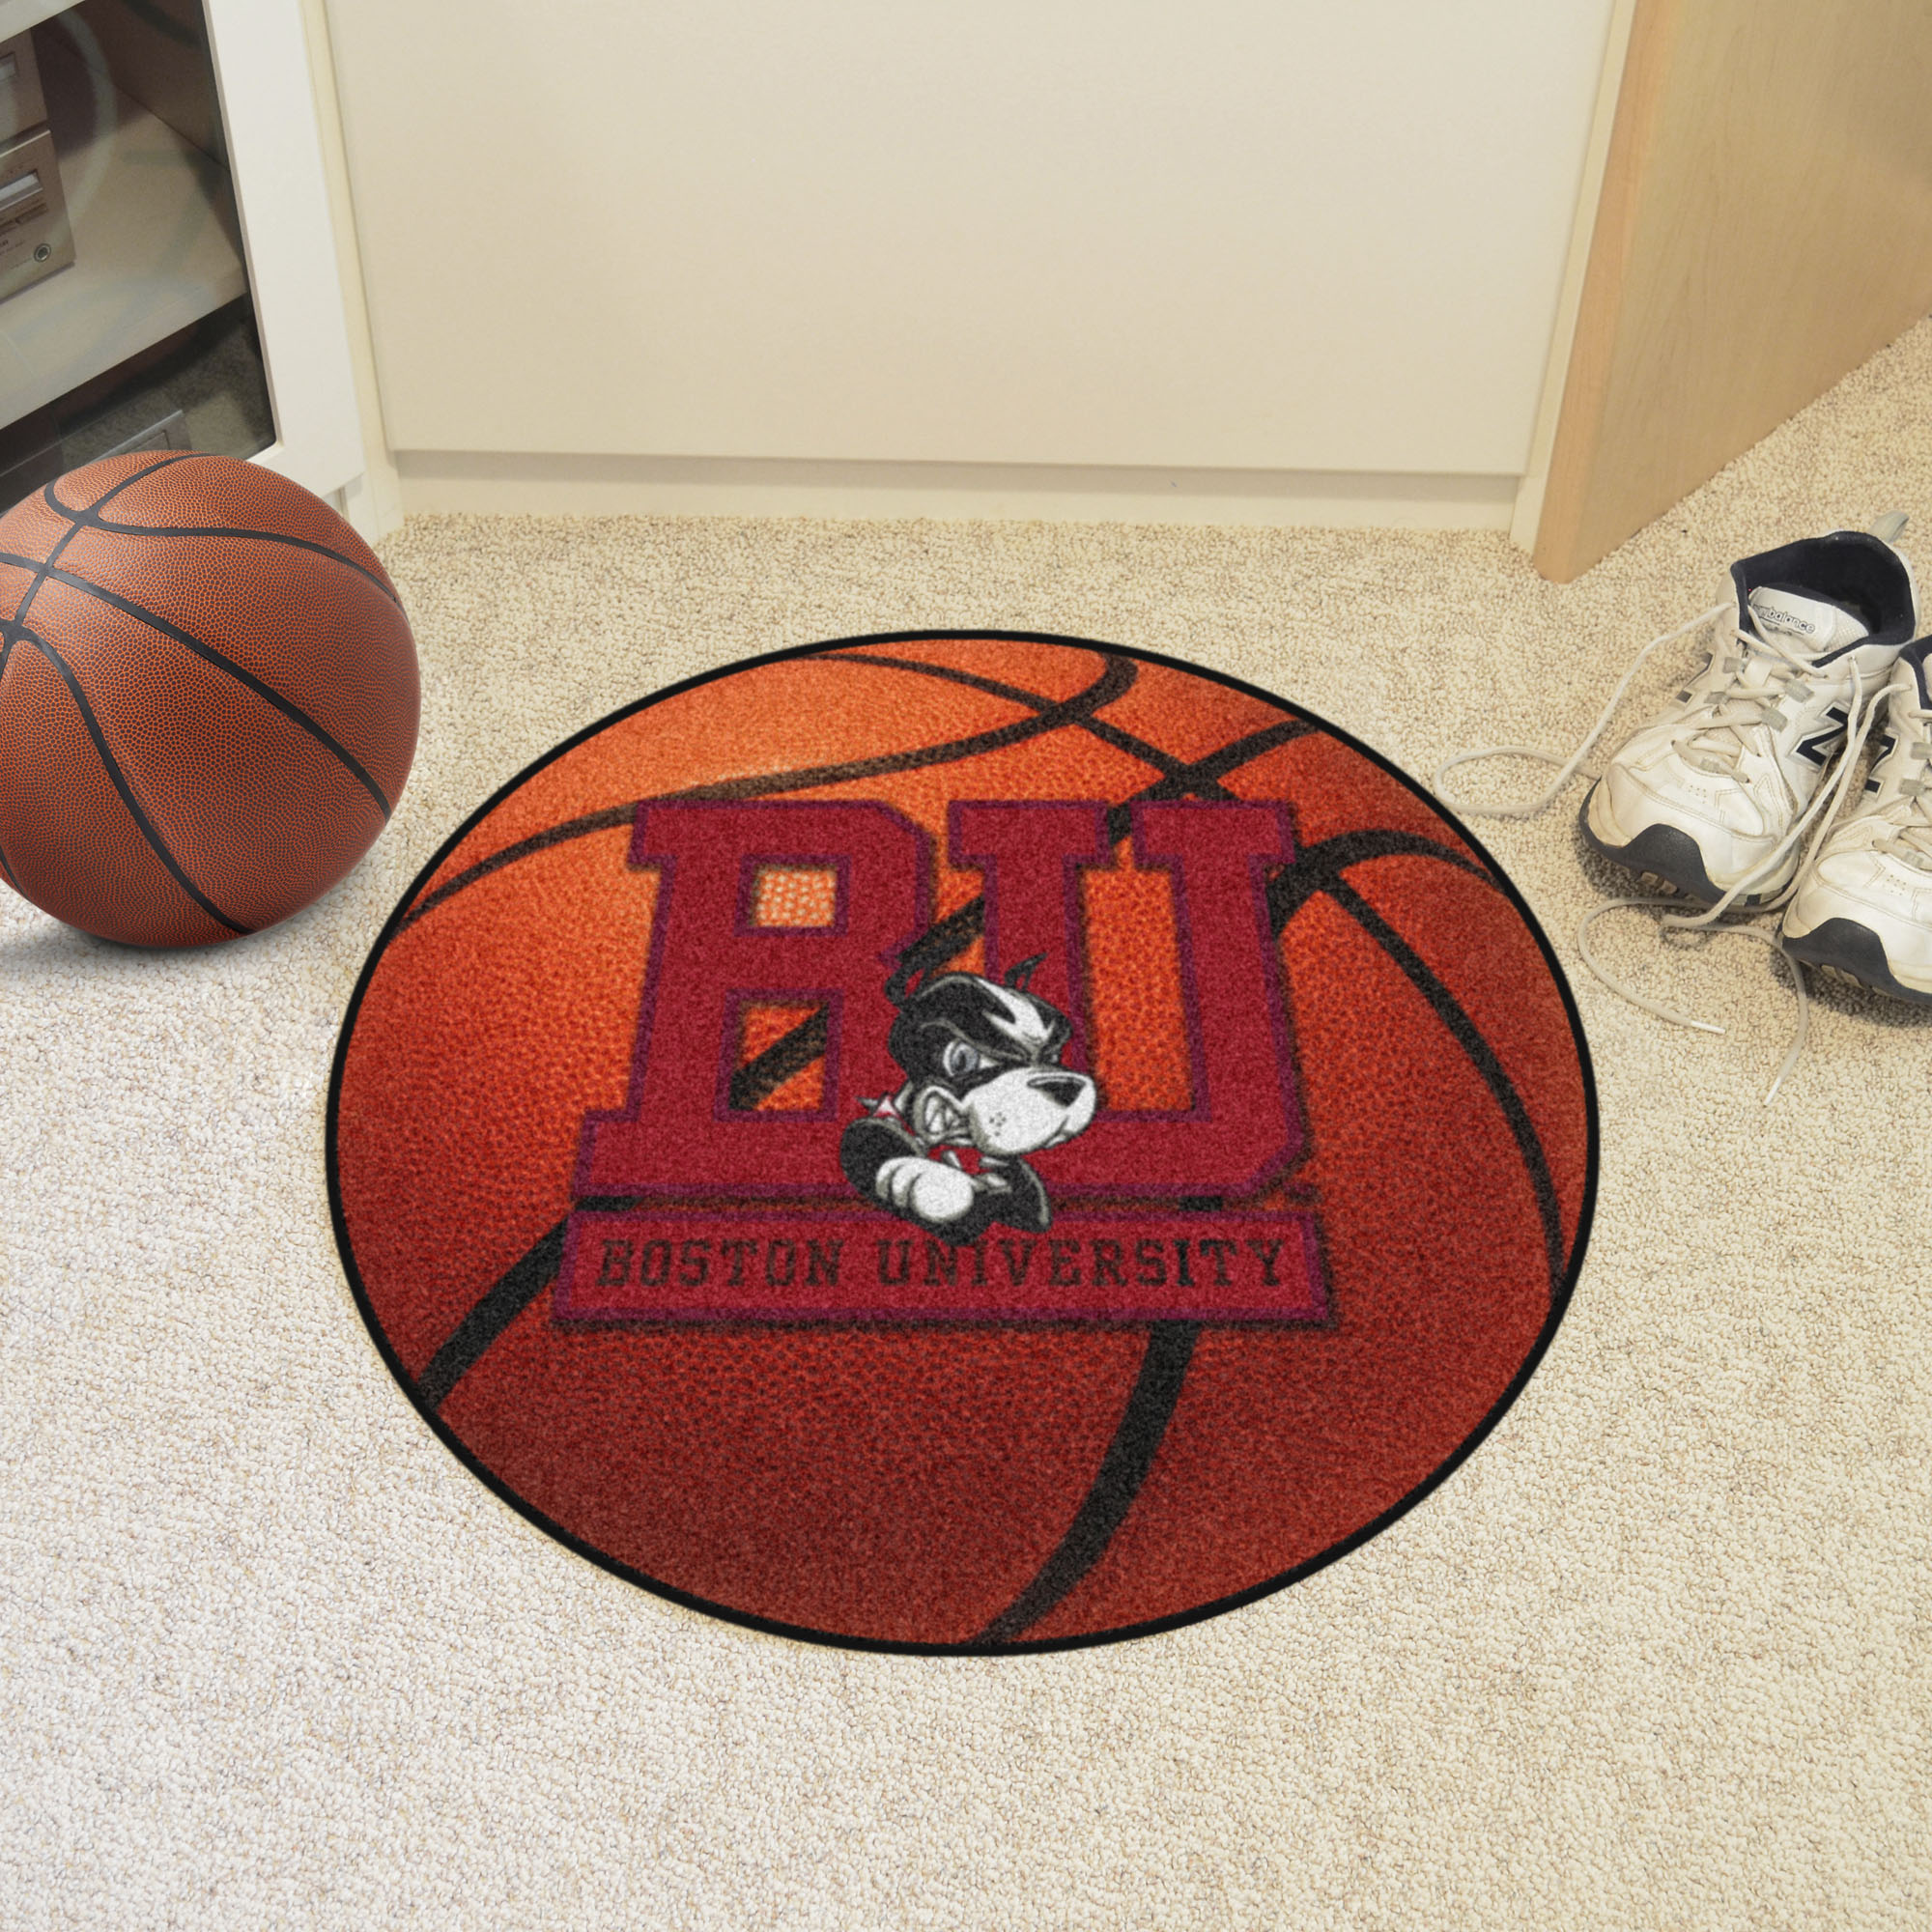 Boston University Ball-Shaped Area Rugs (Ball Shaped Area Rugs: Basketball)